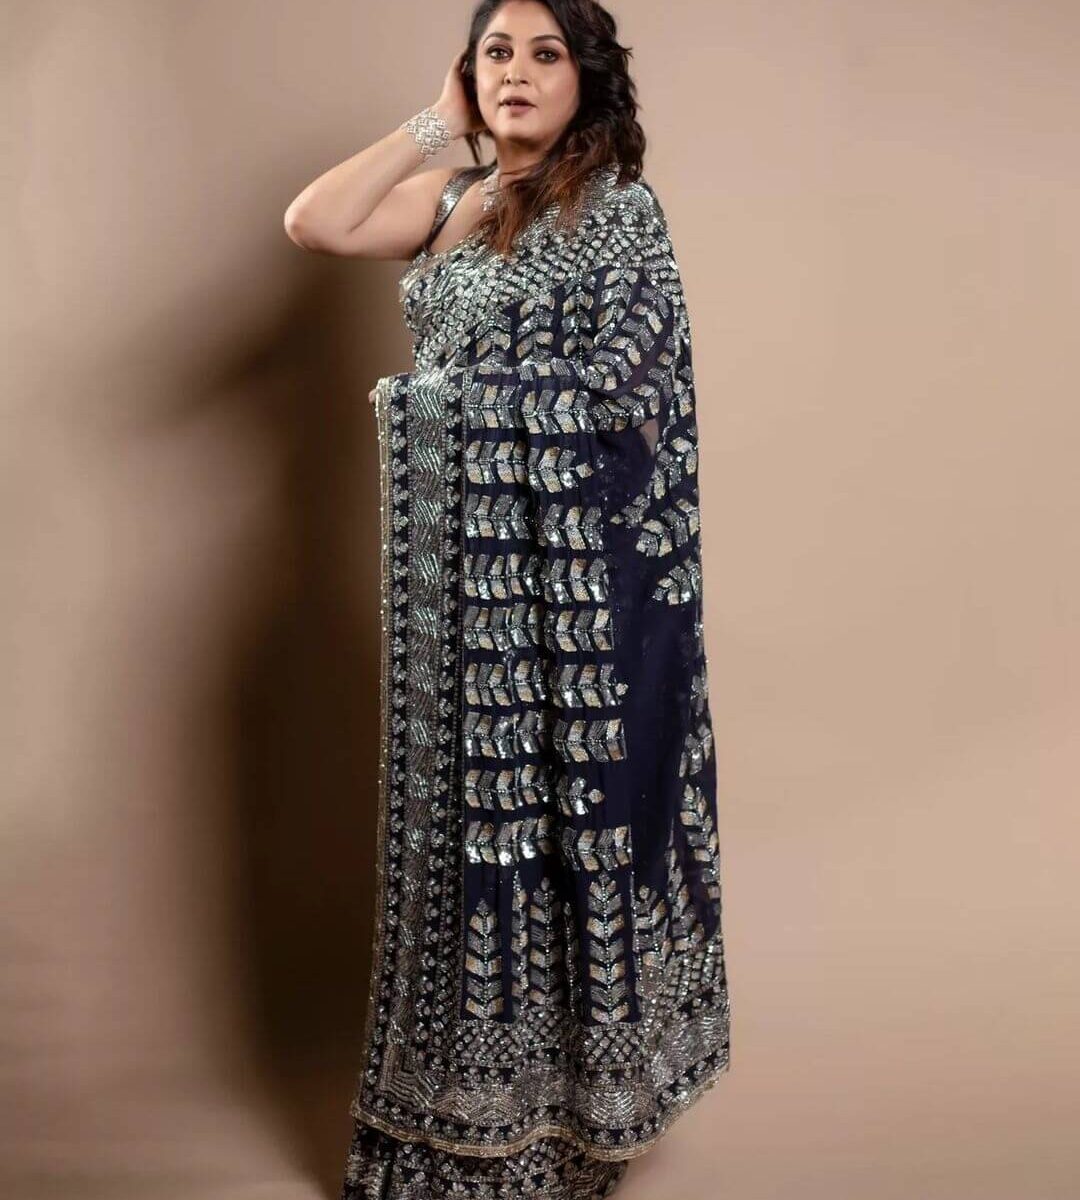 Ramya krishnan stuns in manish malhotra saree | Fashionworldhub